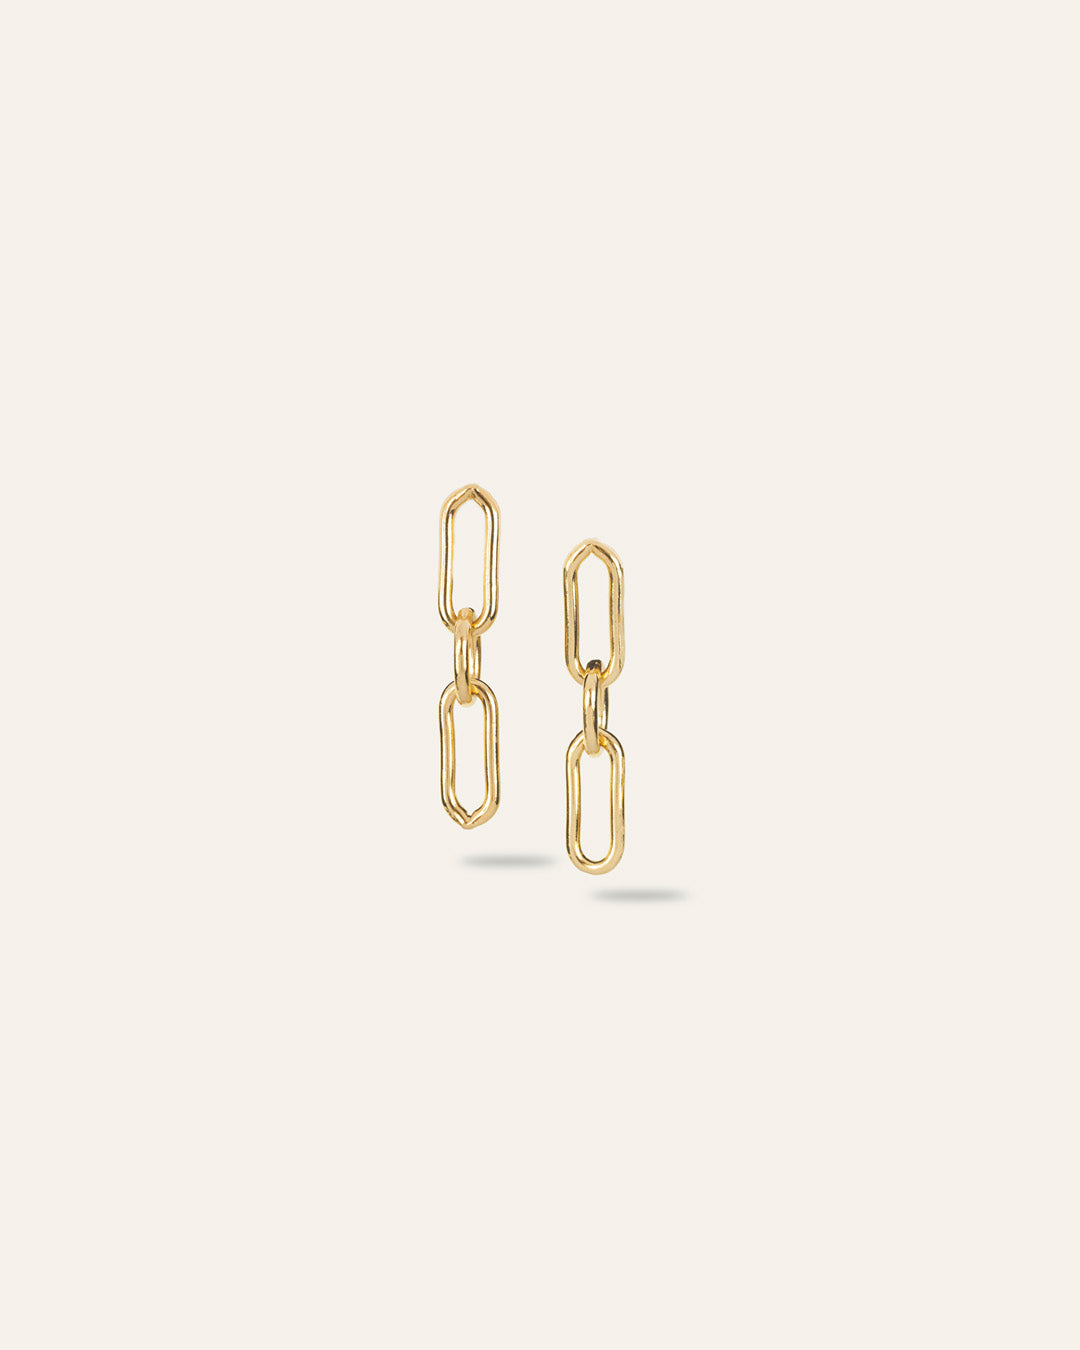 Boucles d'oreilles pendantes en plaqué or 3 microns et made in France, composées d'une chaîne fine à maillons ovales de différentes tailles. 